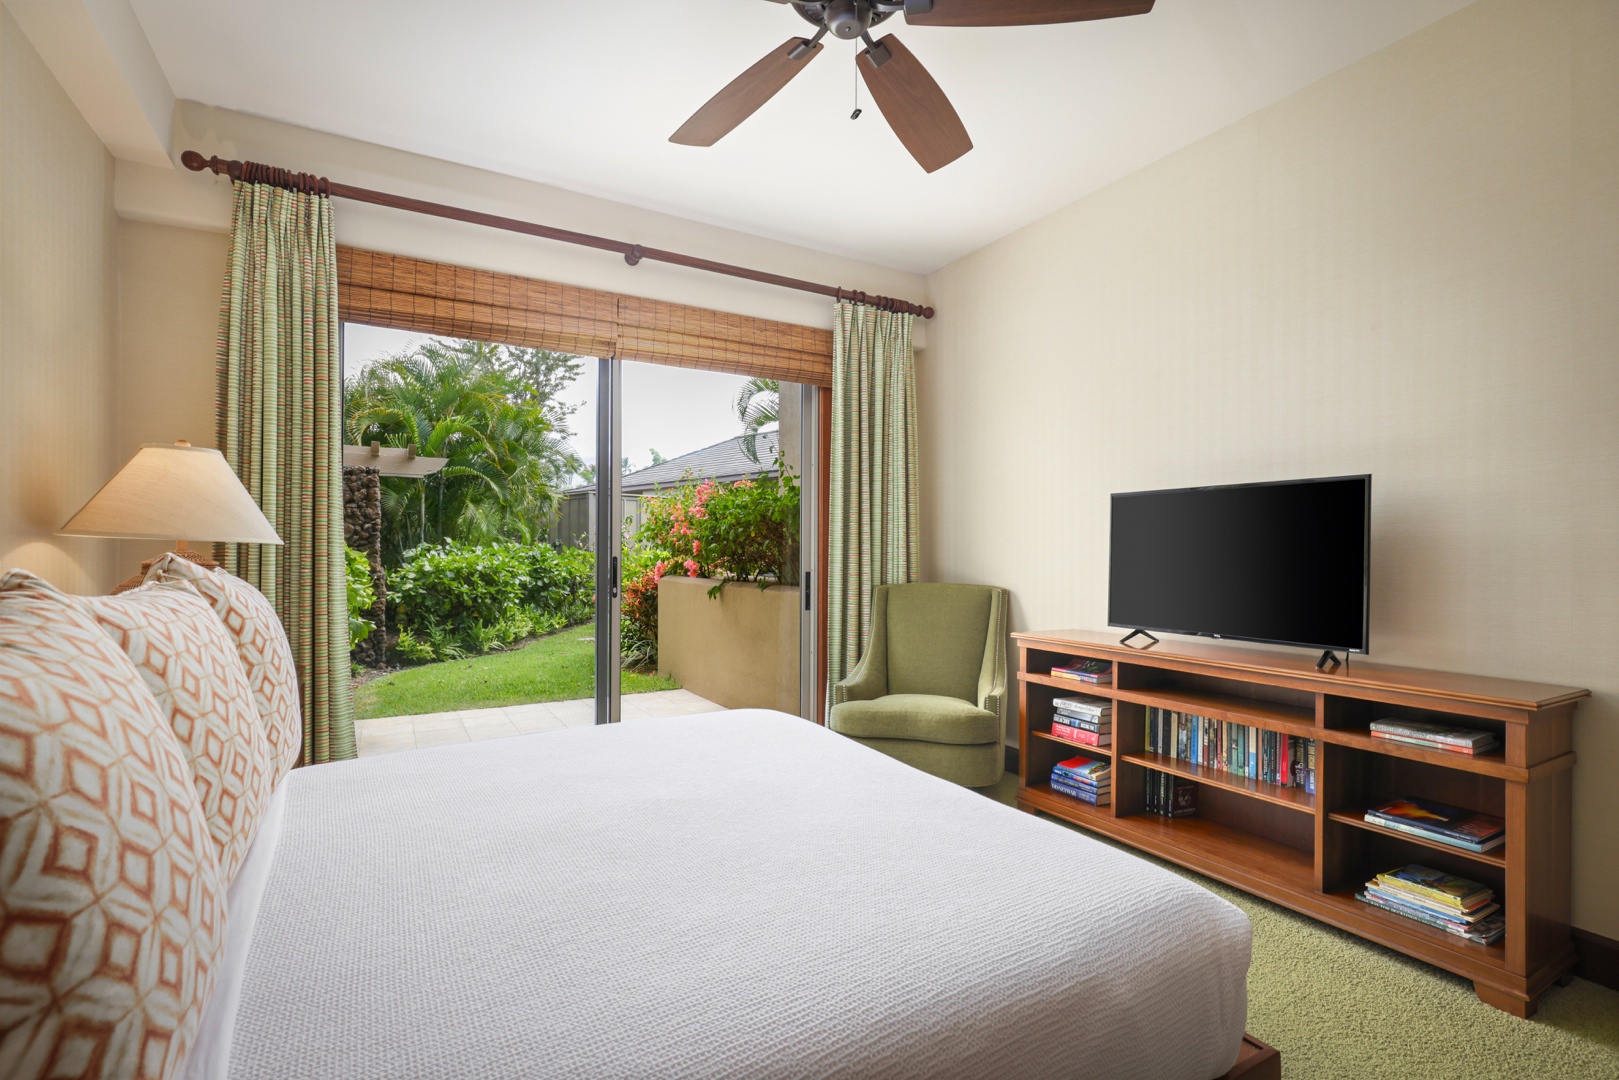 Kailua Kona Vacation Rentals, 3BD Ke Alaula Villa (210B) at Four Seasons Resort at Hualalai - Alternate view of Guest Room #2.